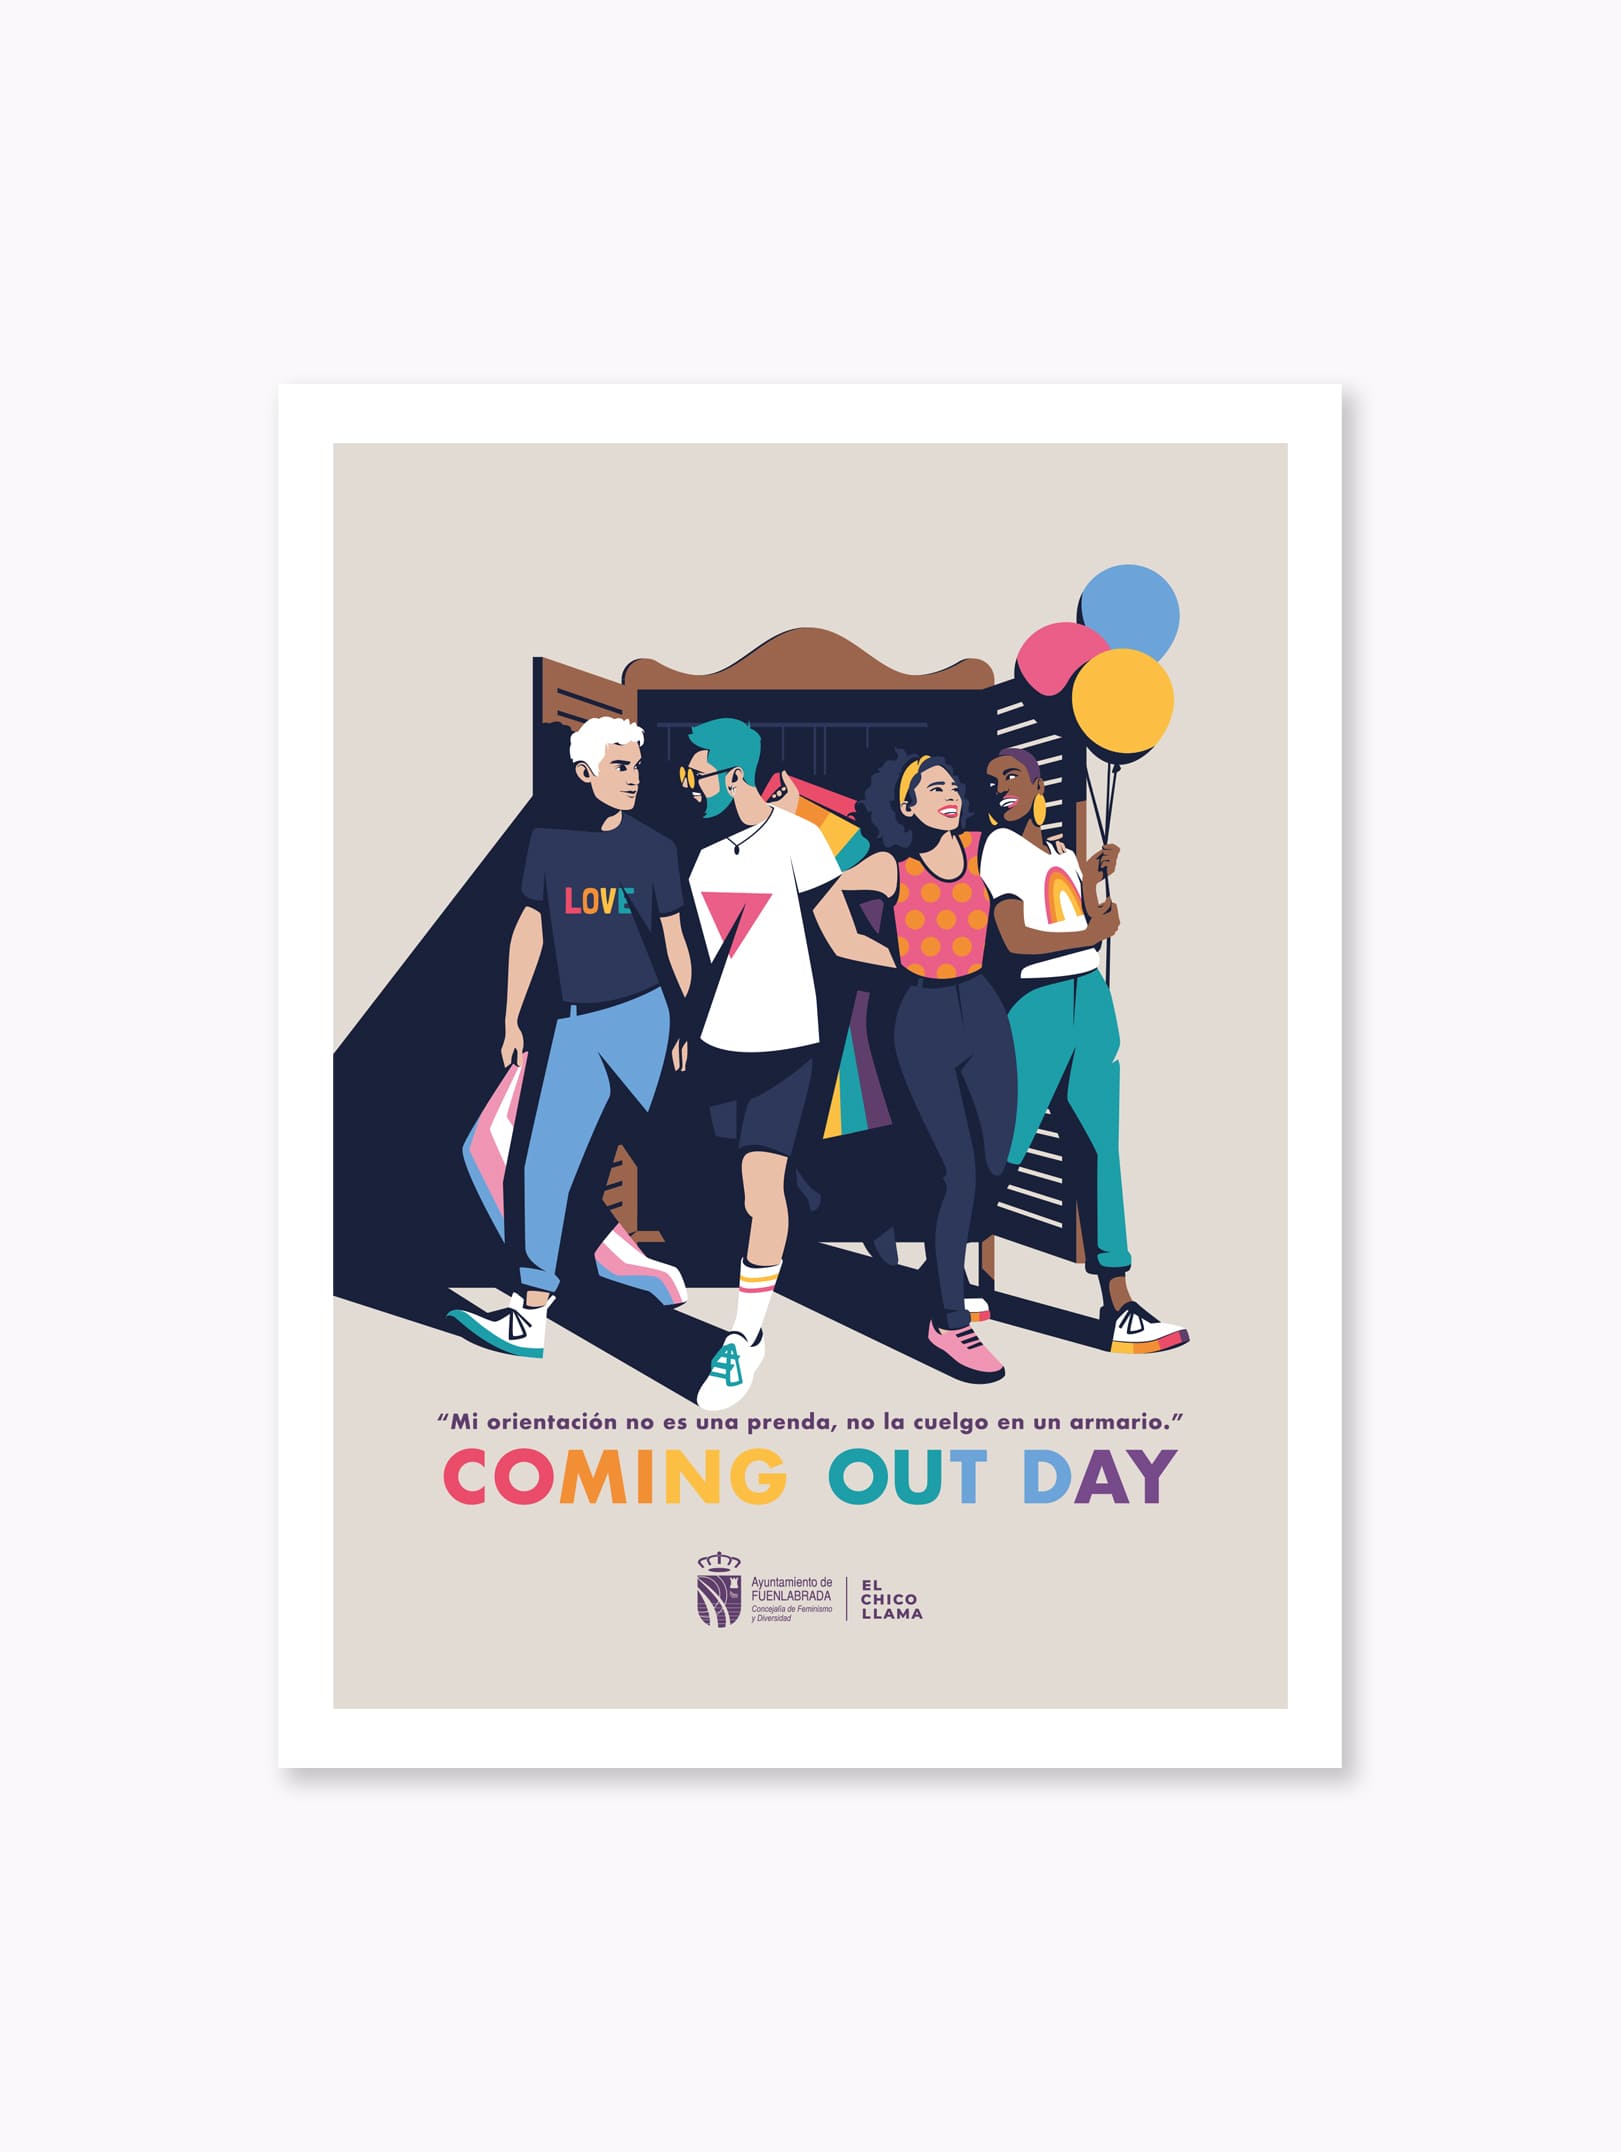 Ilustración para el Coming Out Day - Concejalía de Feminismo y Diversidad del Ayuntamiento de Fuenlabrada.